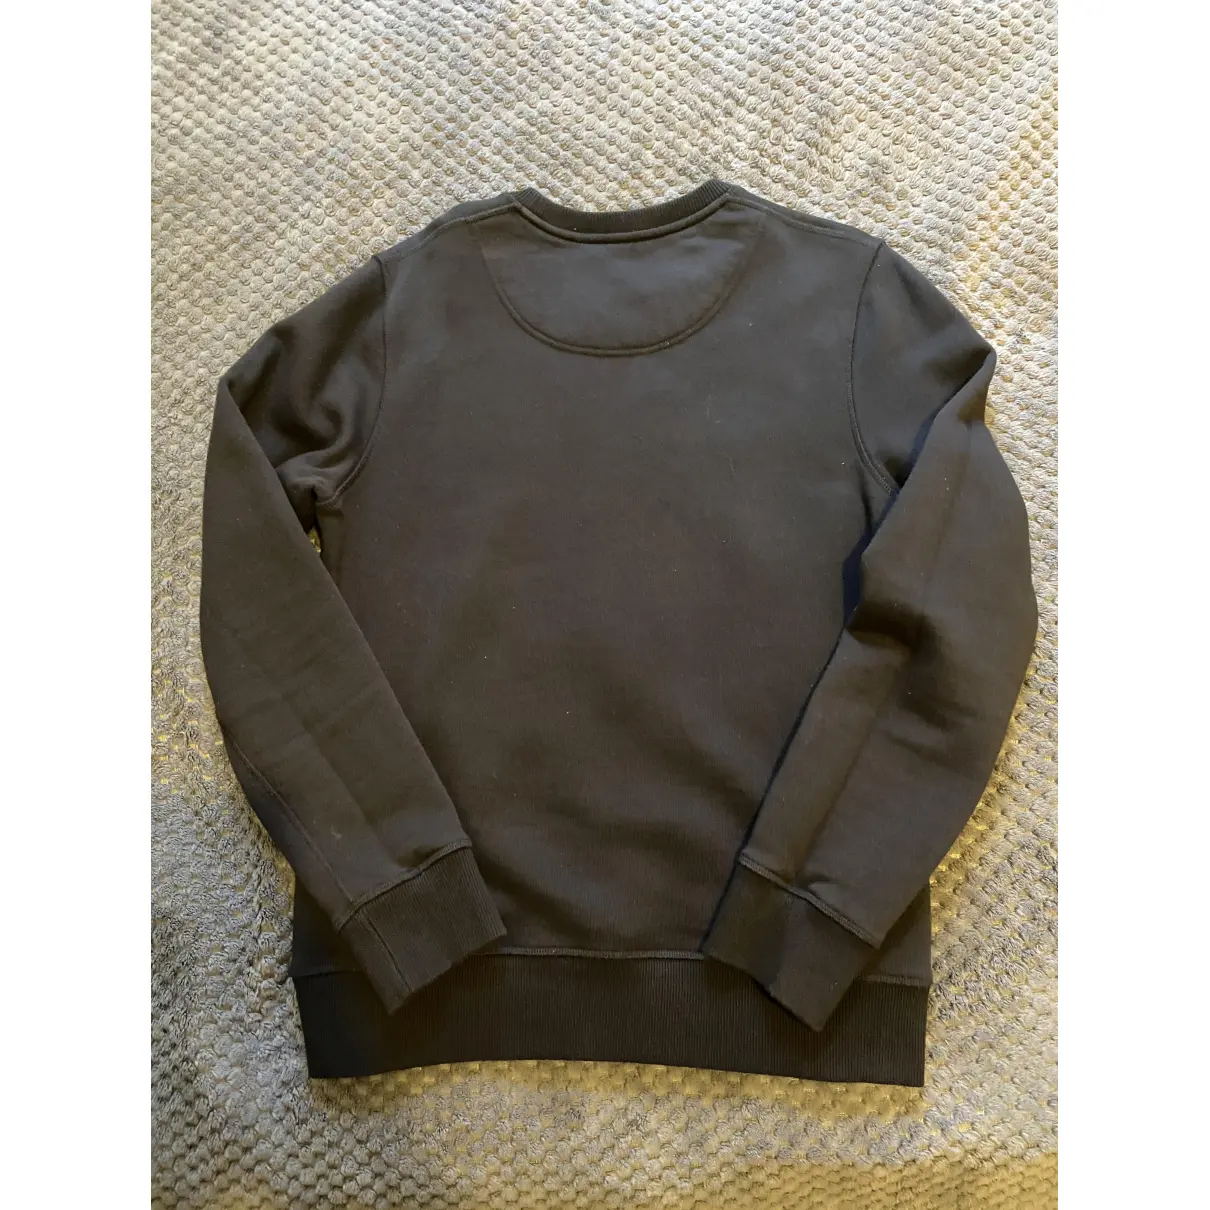 Buy Kenzo Black Cotton Knitwear & Sweatshirt online